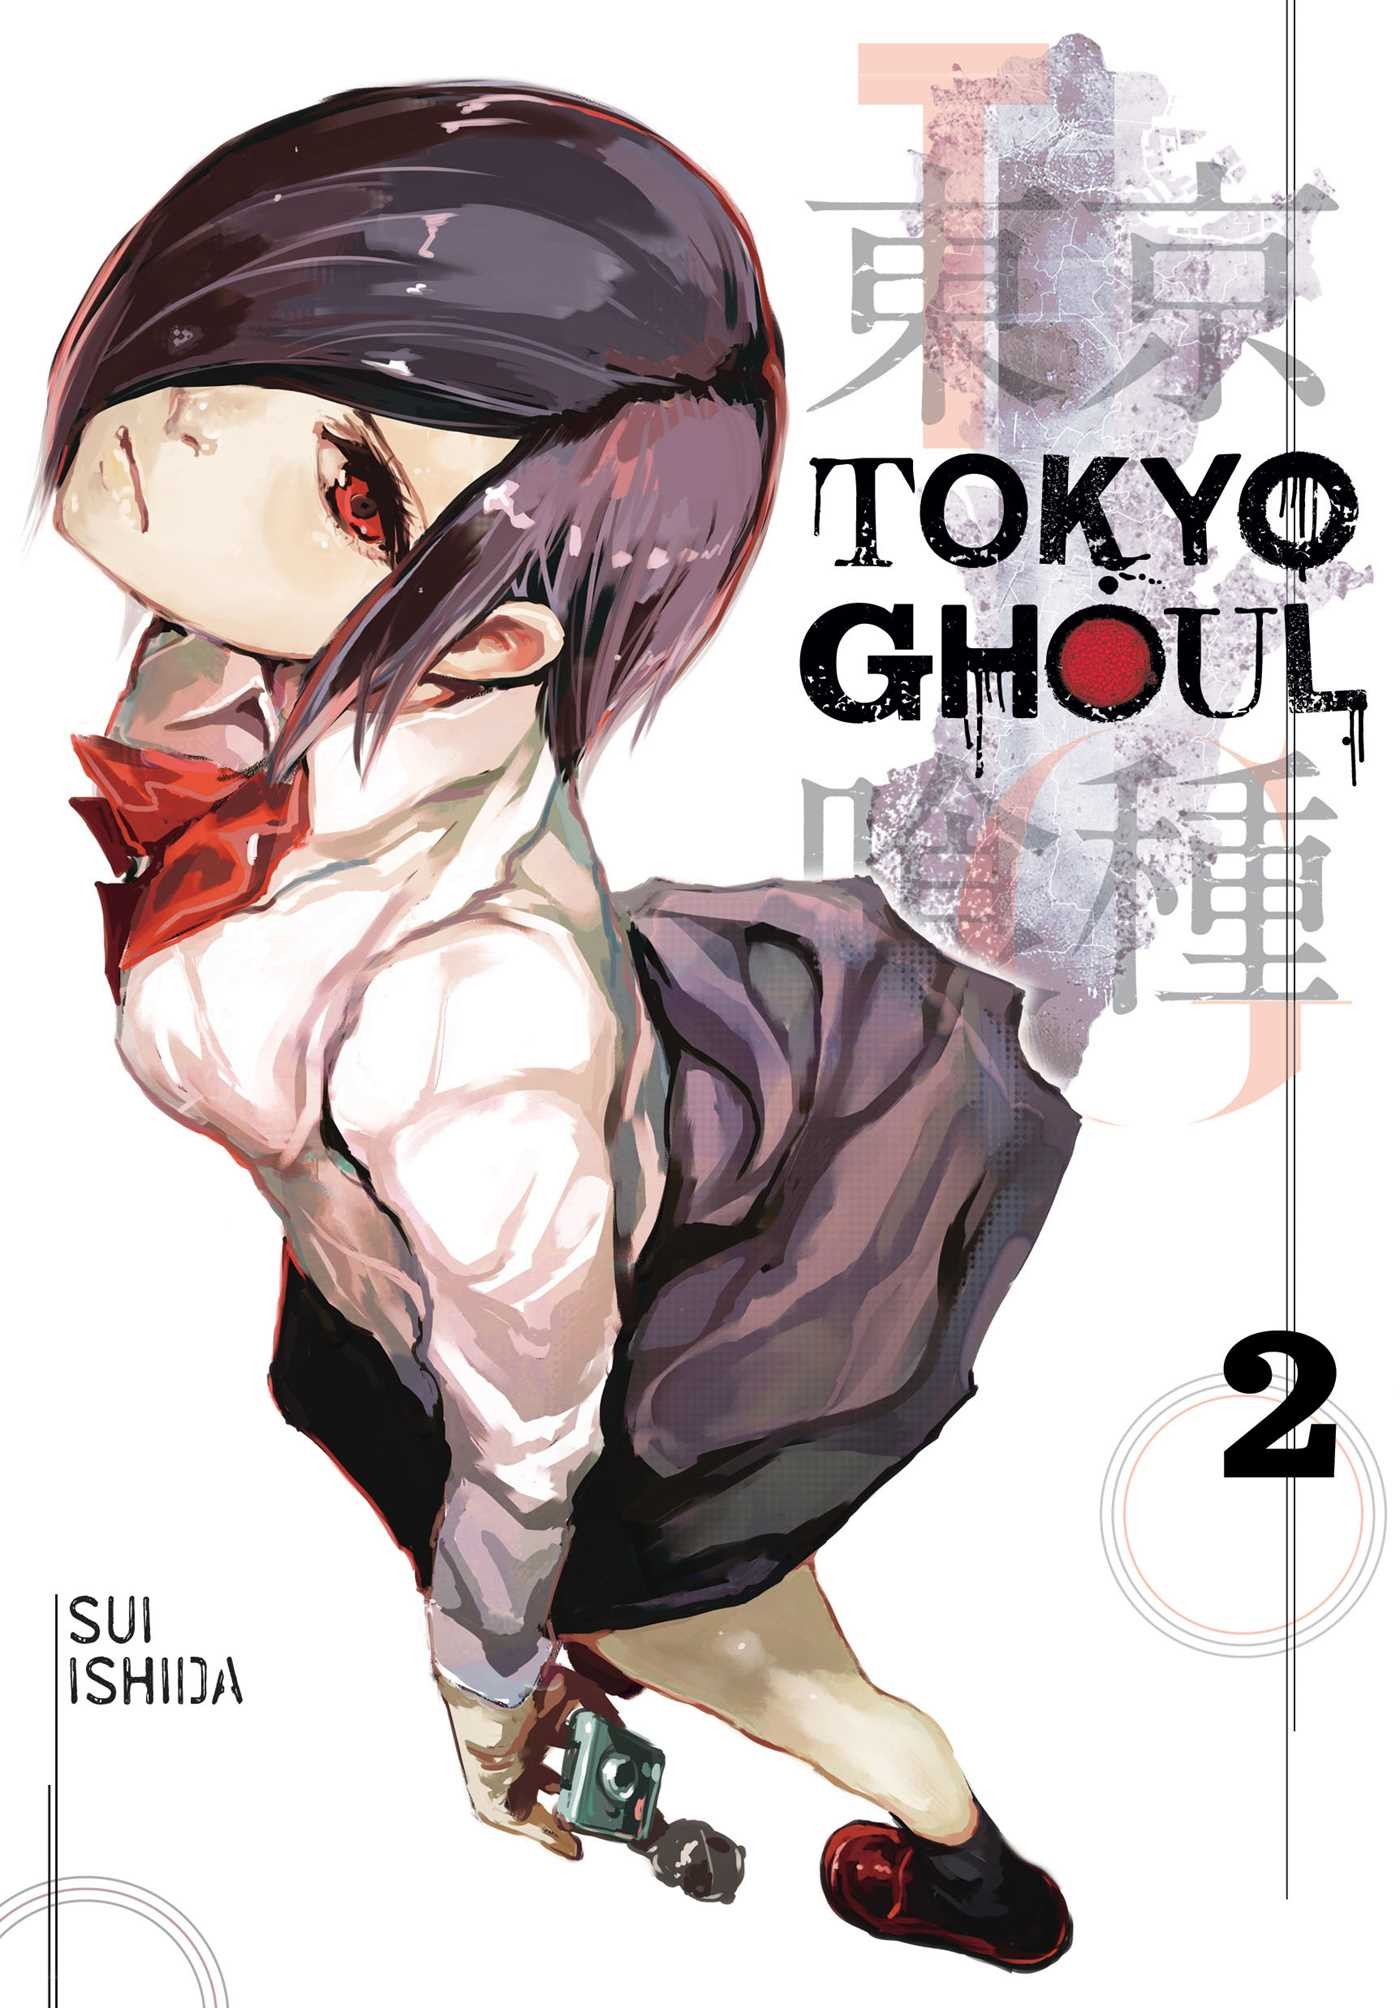 Tokyo Ghoul, Vol. 02